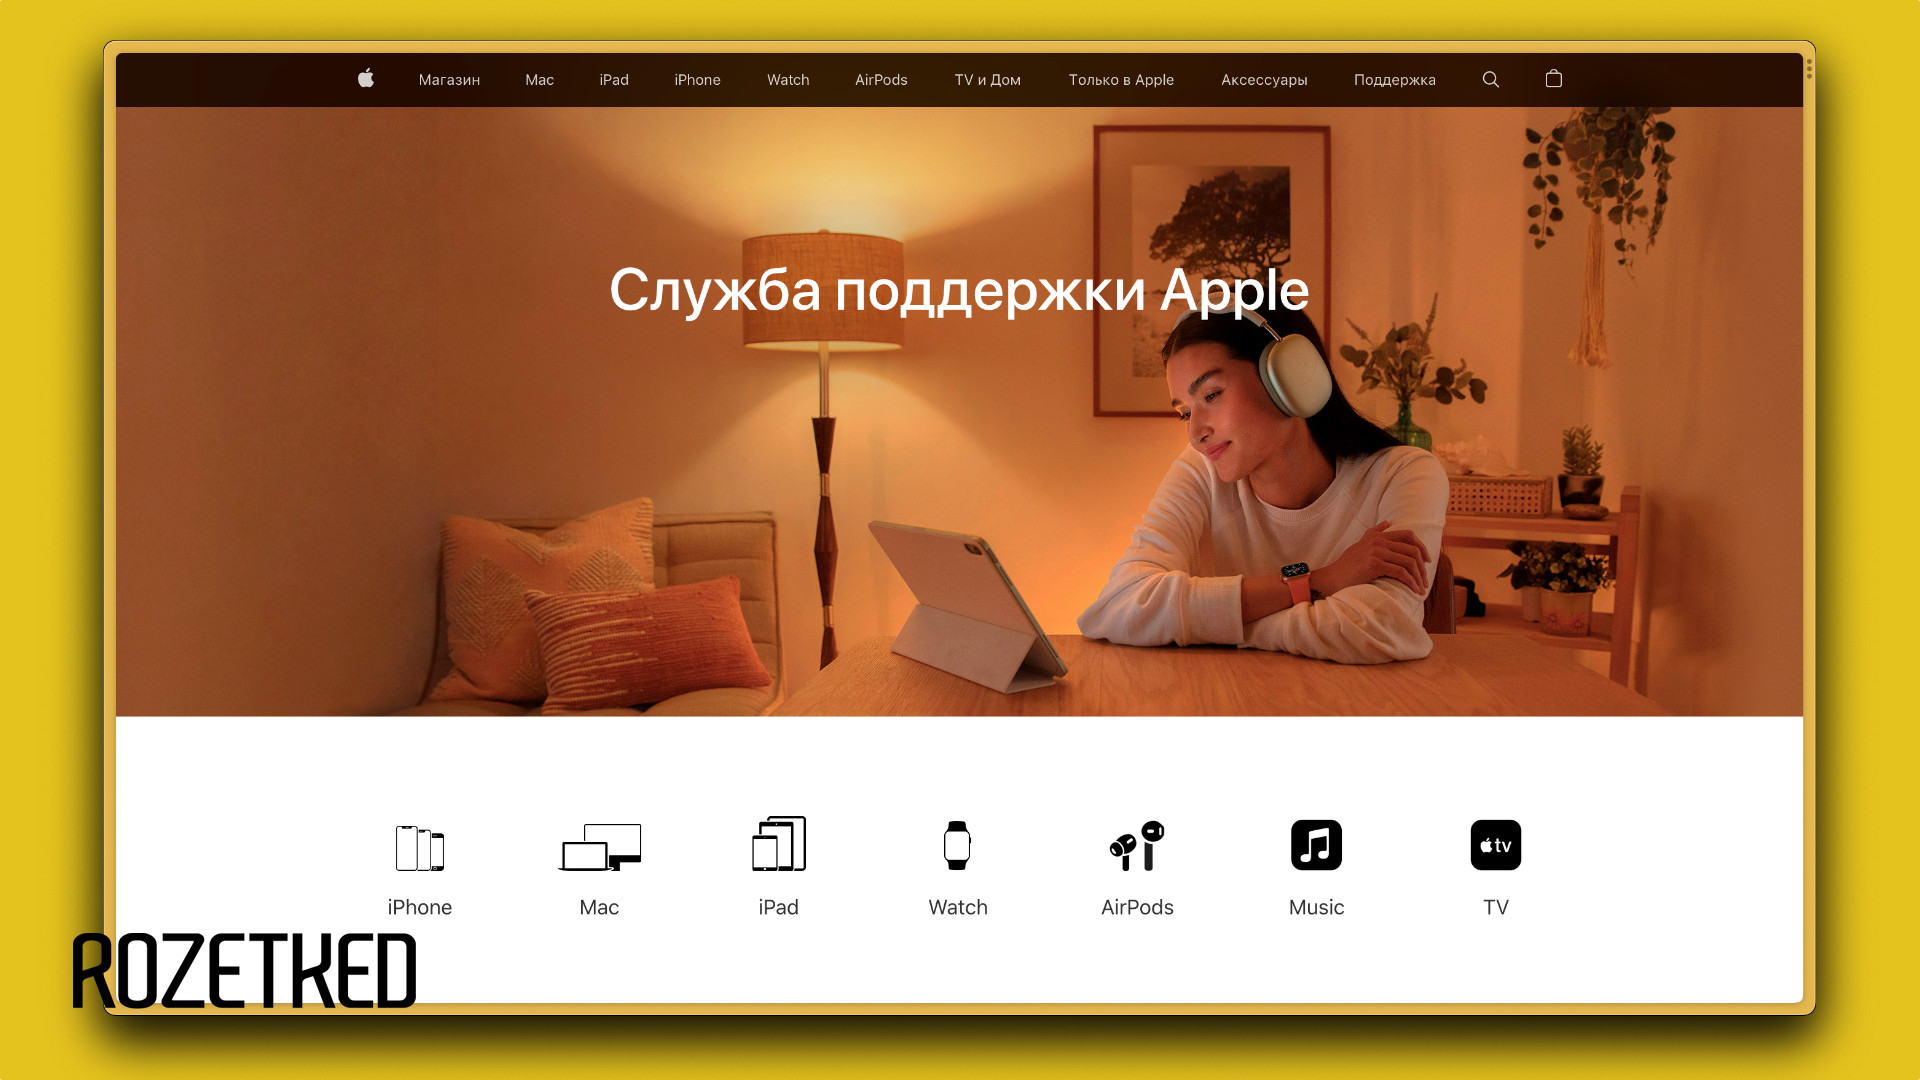 Российский сайт Apple теперь перенаправляет в справочный центр